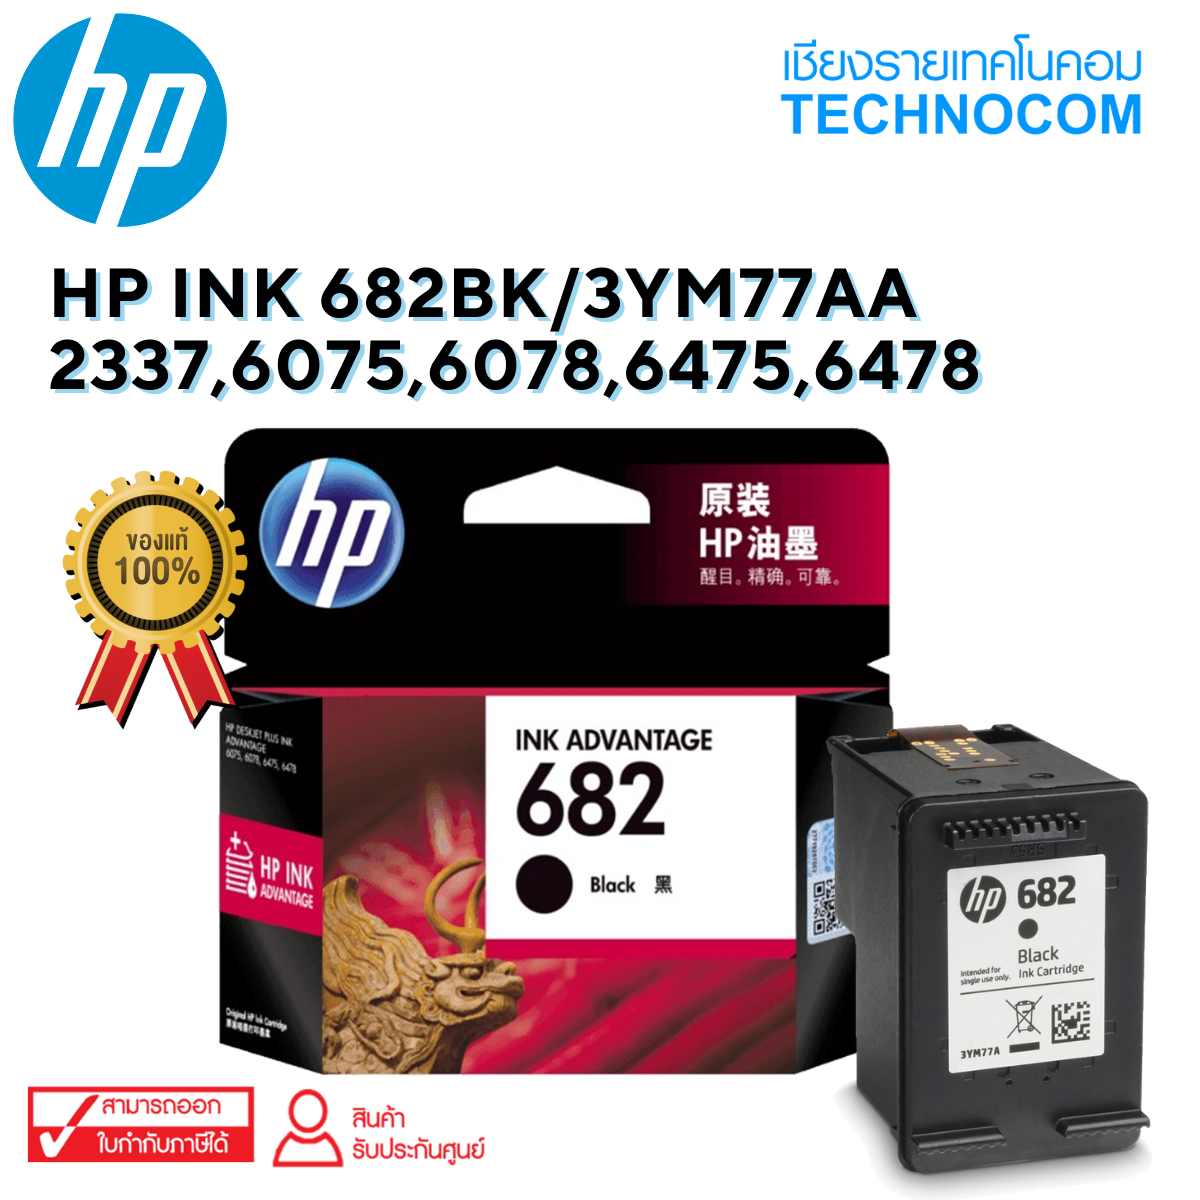 HP INK 682BK/3YM77AA/2337,6075,6078,6475,6478